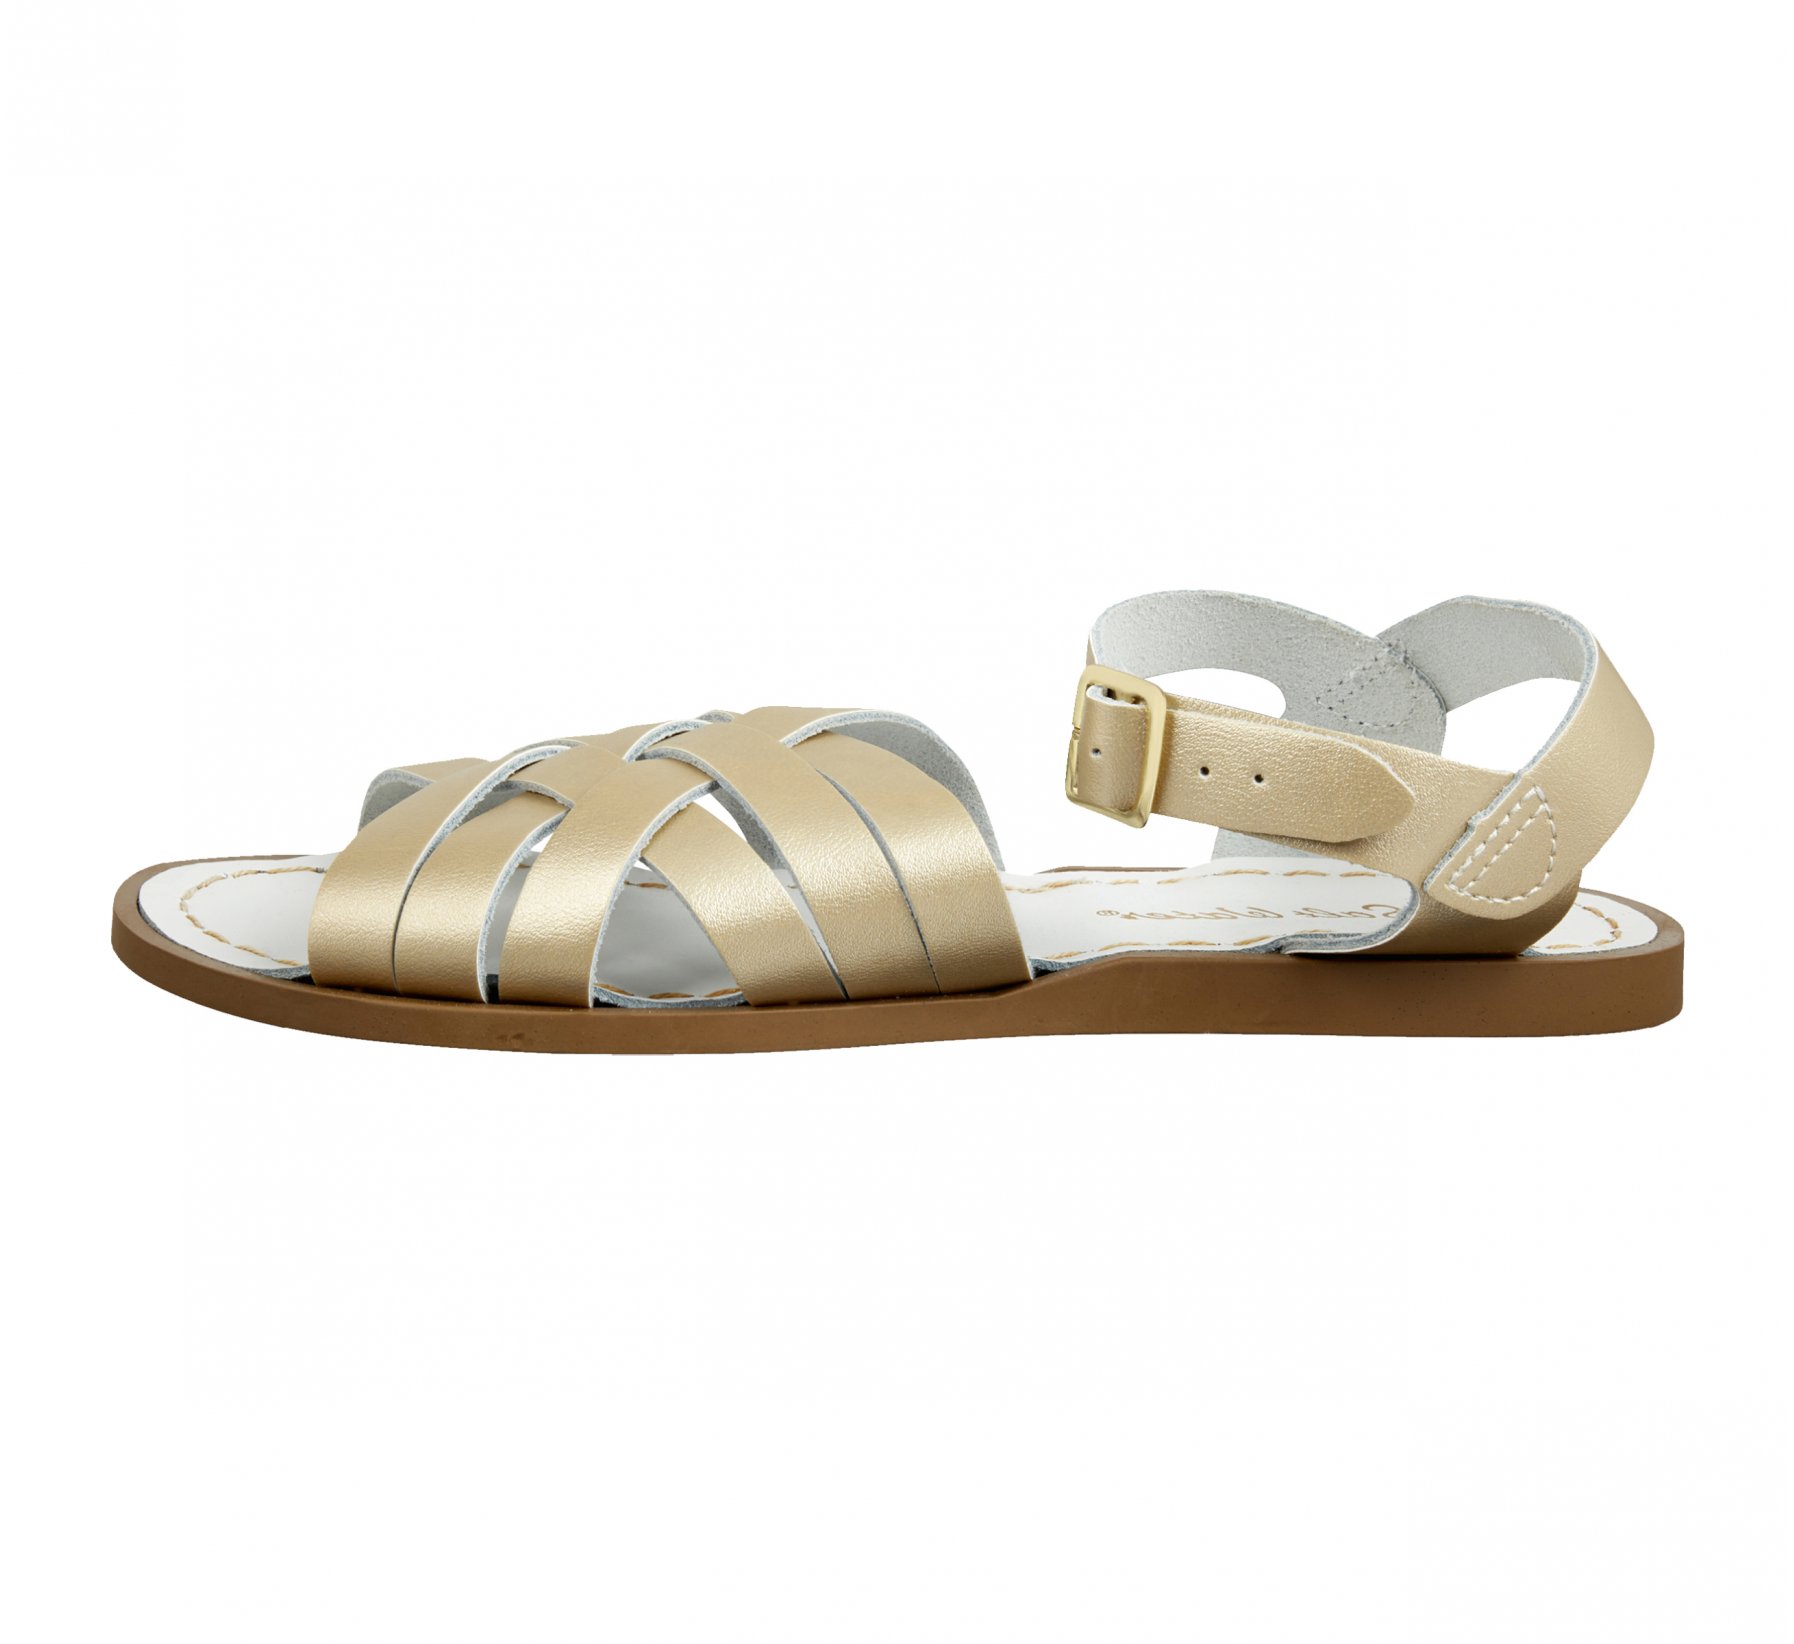 Retro Doré - Salt Water Sandals